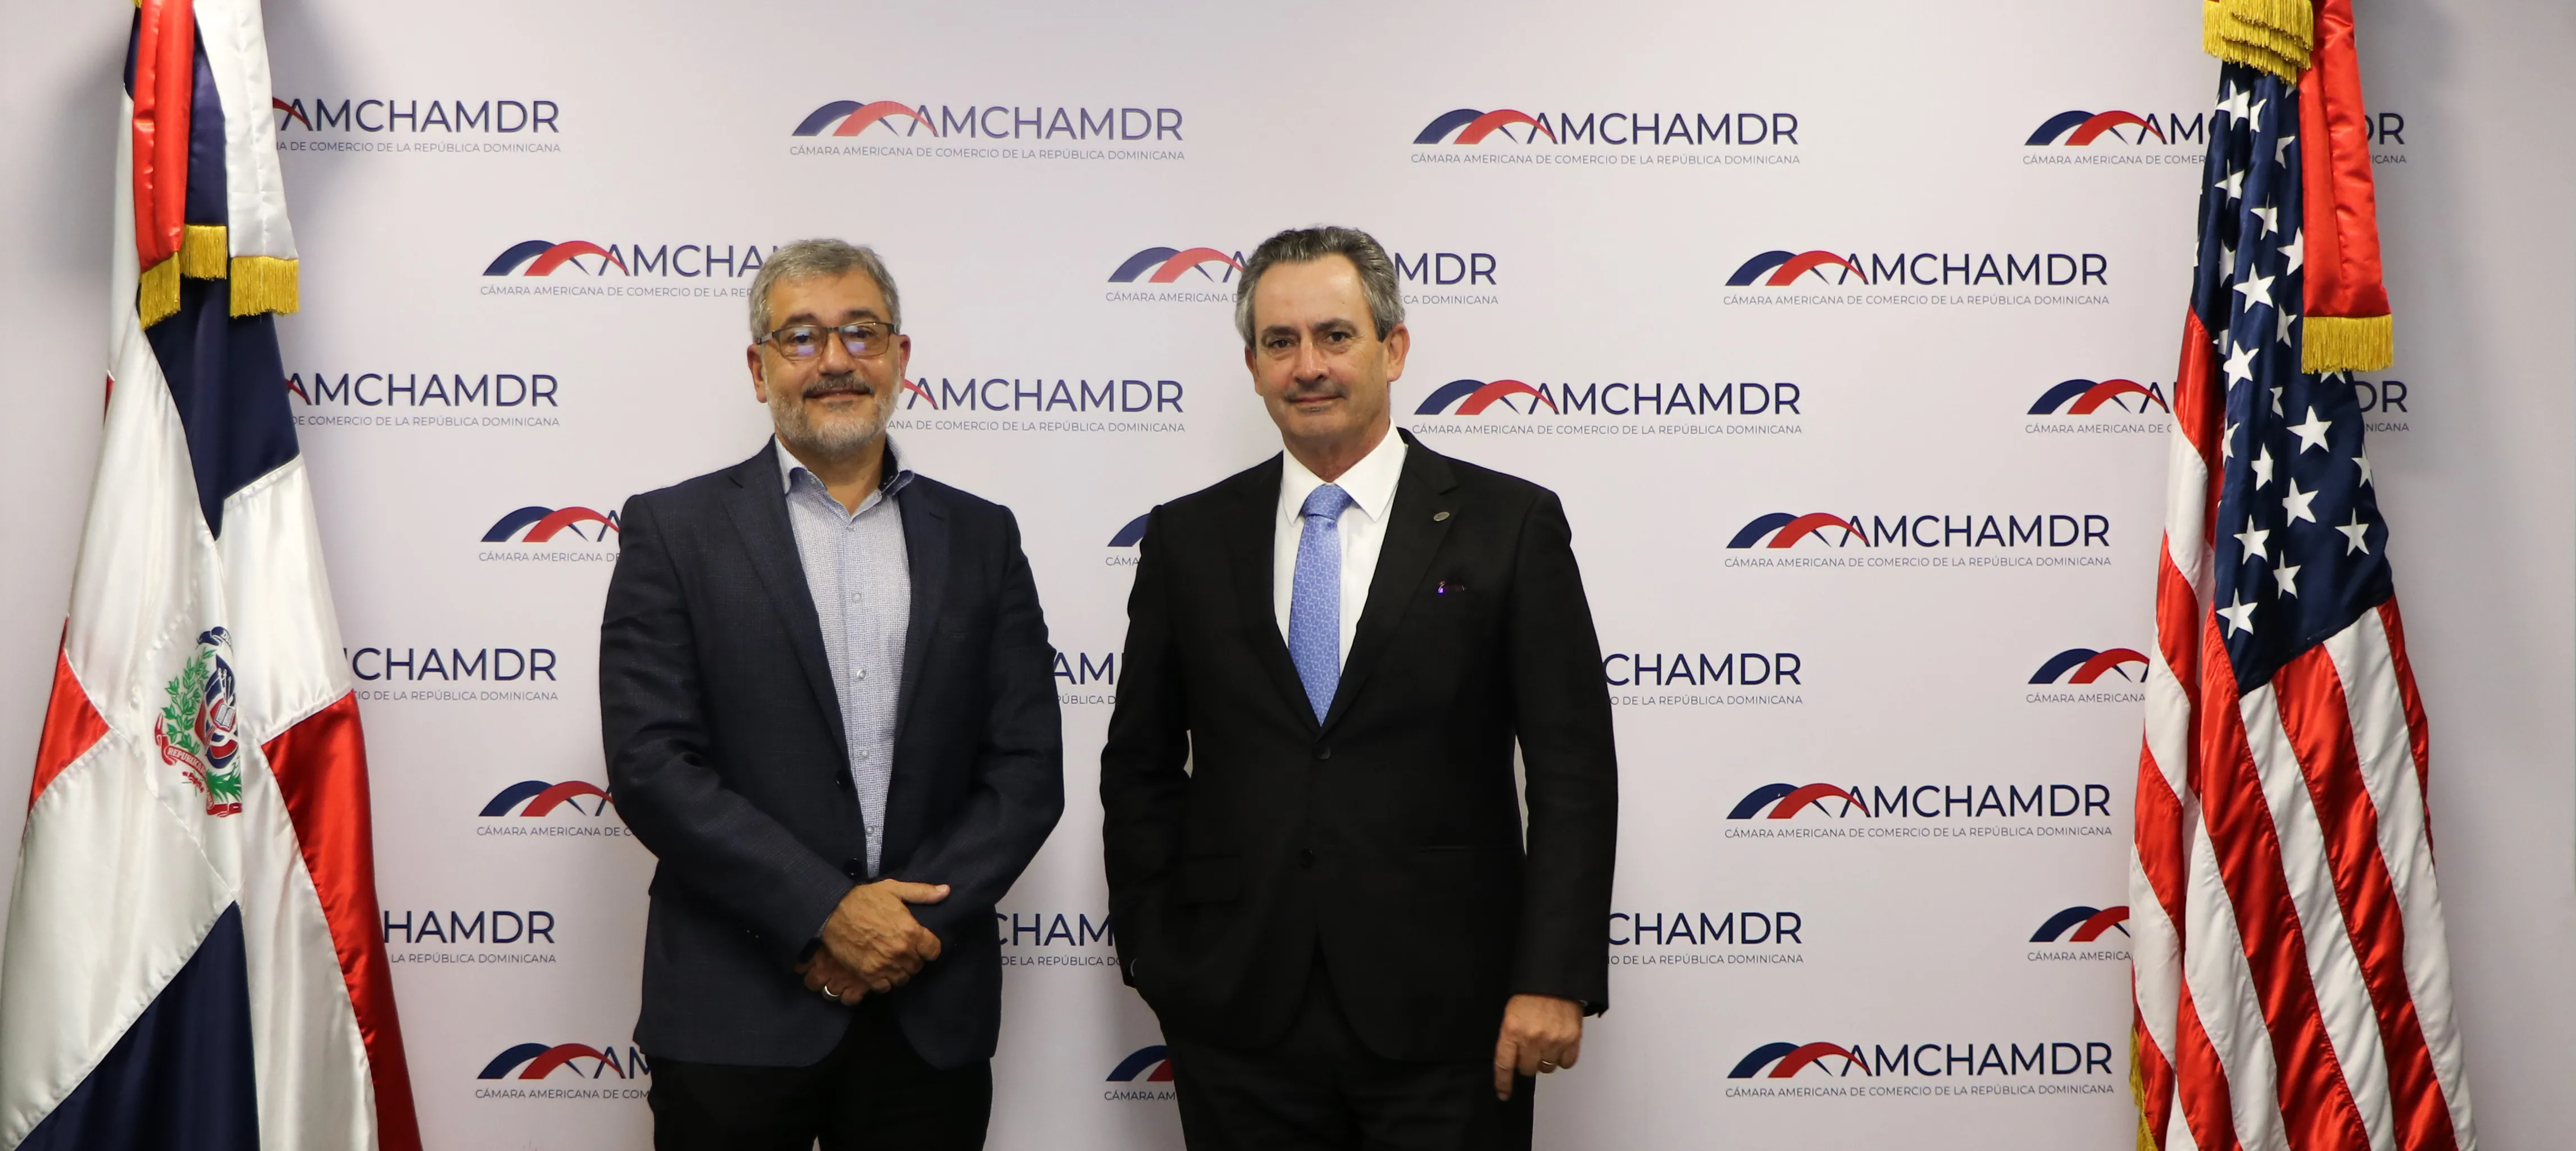 Amchamdr celebra Ley de Aduanas pero cree hay que transparentar comercio transfronterizo